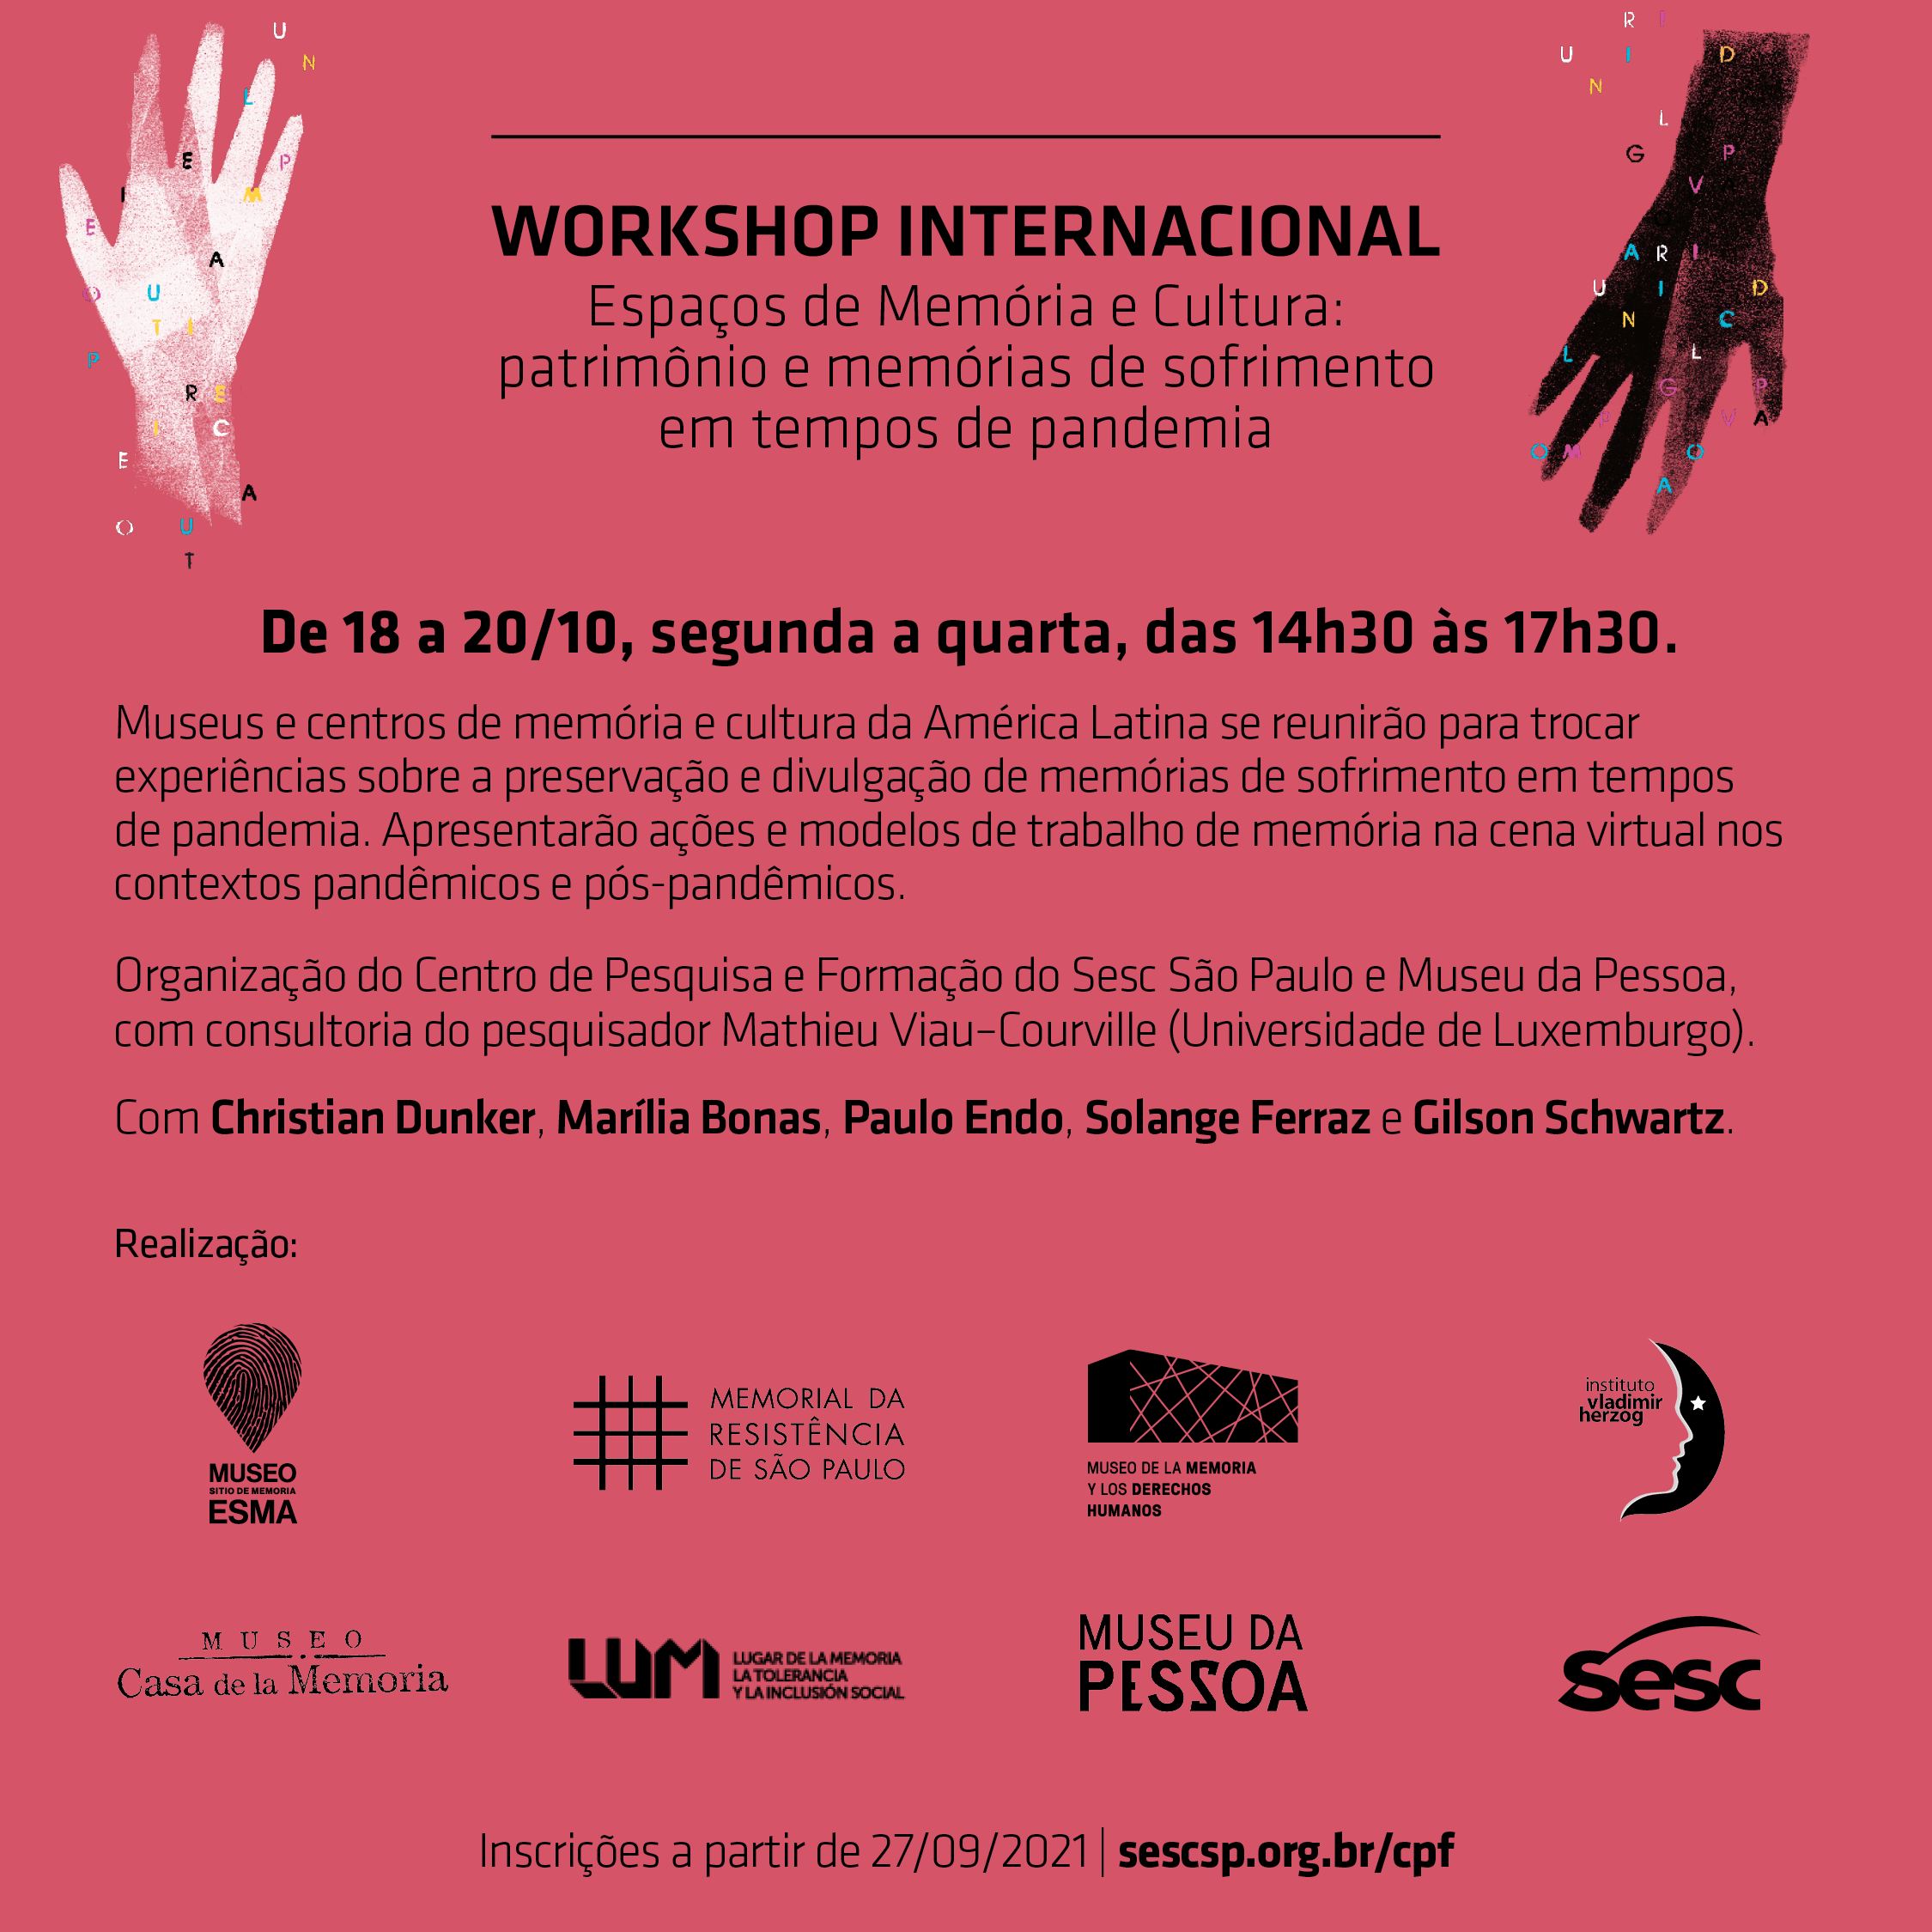 Arte com fundo rosa, onde se lê escrito em preto "Workshop Internacional Espaços de Memória e Cultura: patrimônio e memórias de sofrimento em tempos de pandemia", "de 18 a 20/10, segunda a quarta, das 14:30 às 17:30h".